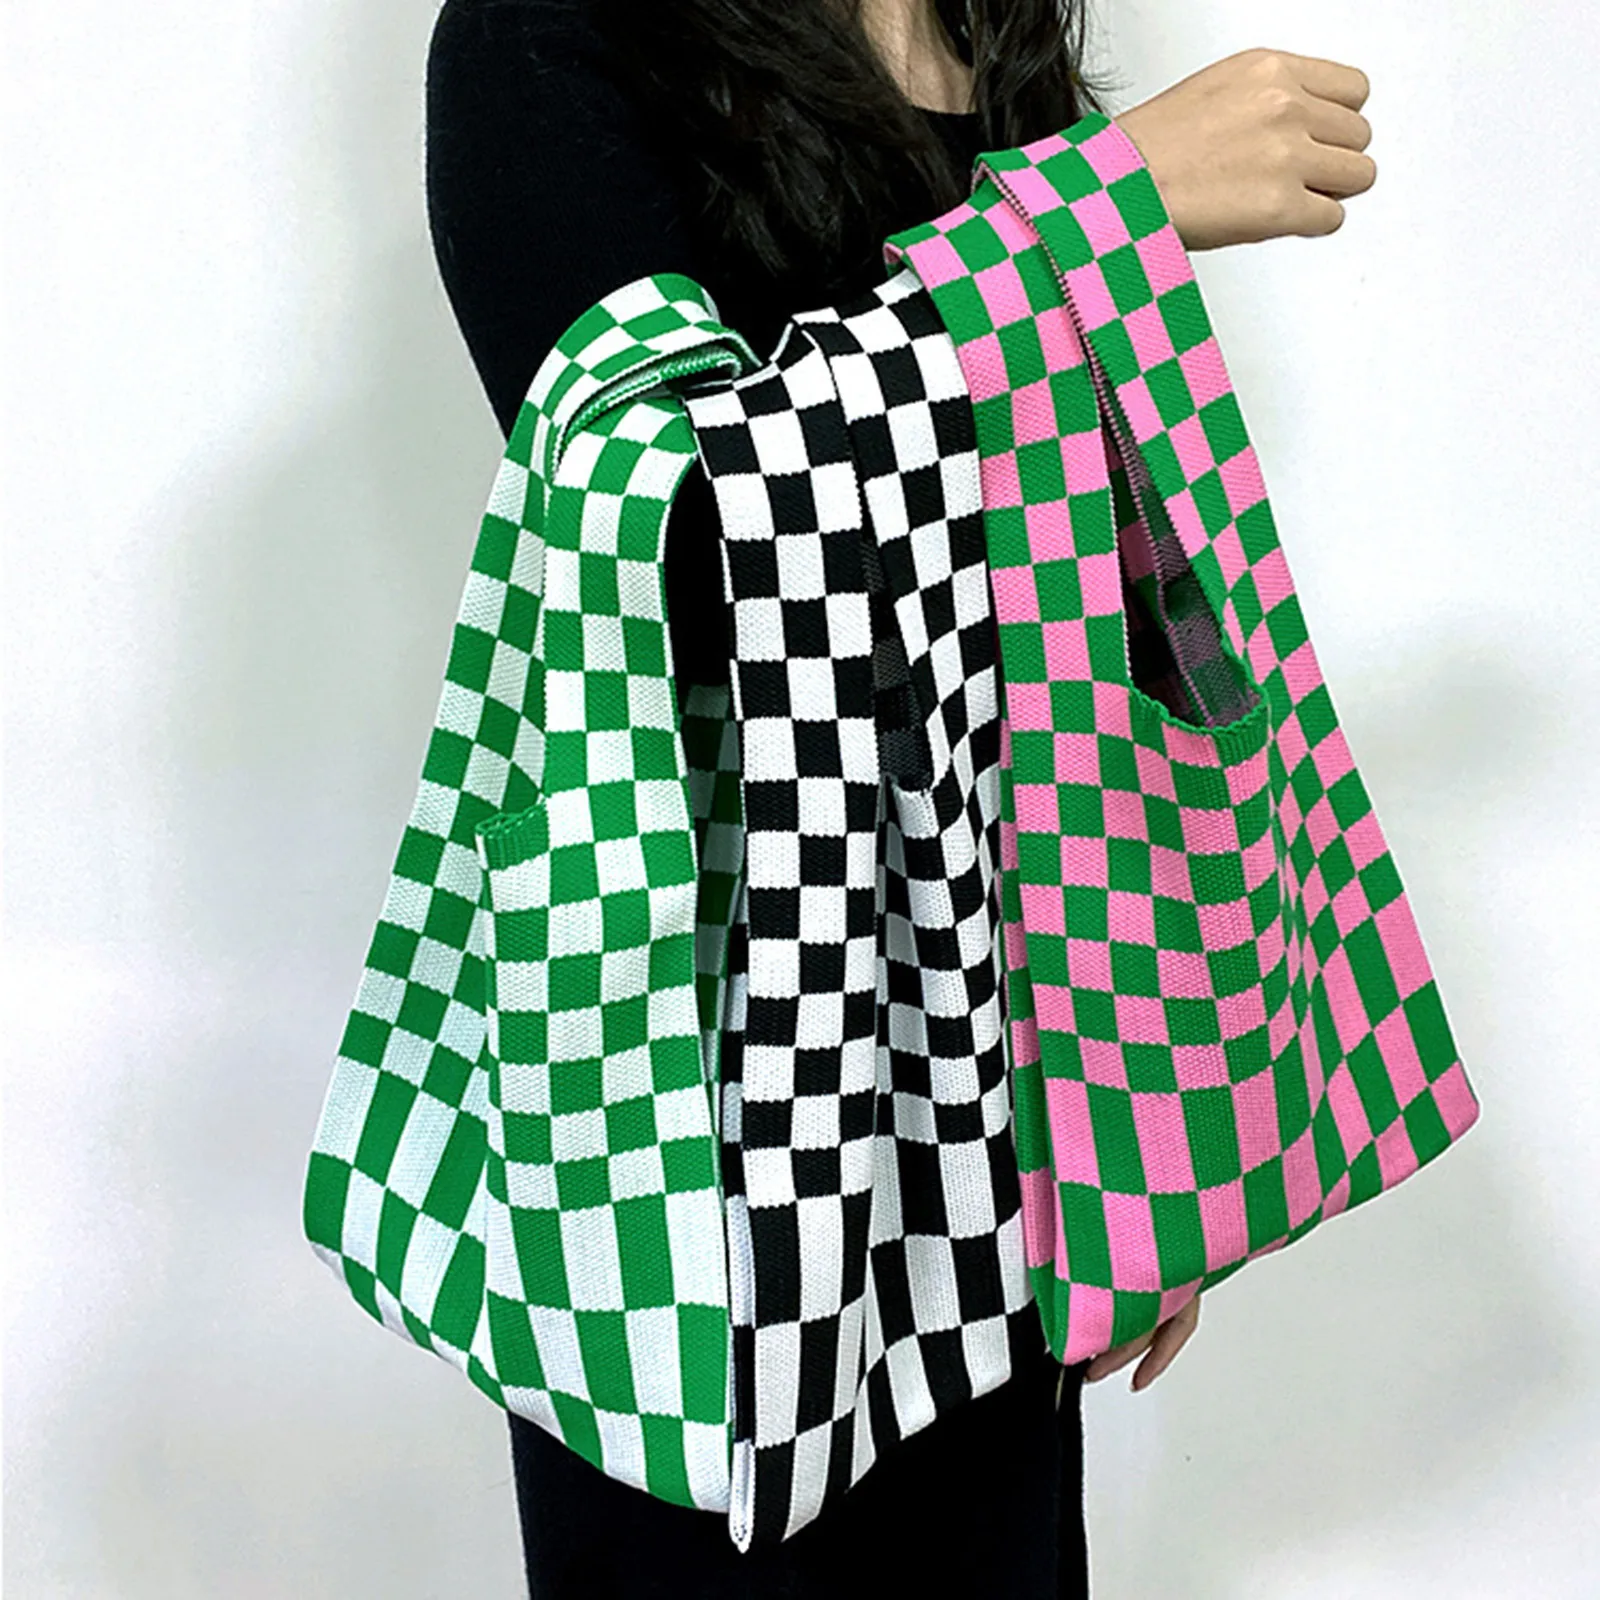 

Retro Weave Plaid Handbags Women Wrist Bag Knitting Checkered Tote Shoulder Bags